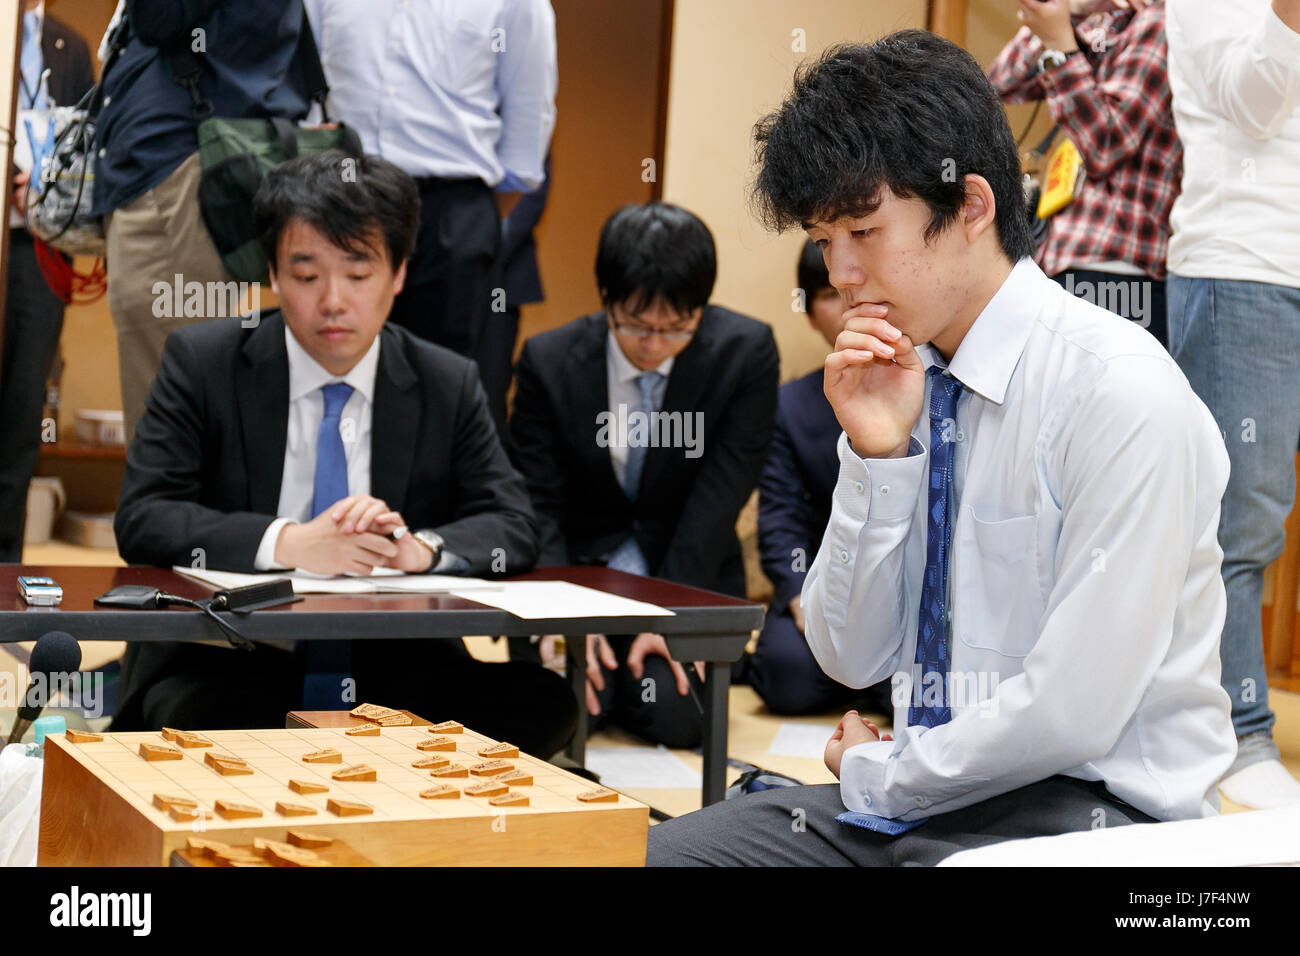 Sota Fujii gana el shogi partido contra Seiya Kondo el 30º Torneo Ryuuou el 25 de mayo 2017, Tokio, Japón. Fujii, el más joven jugador profesional en Japón,